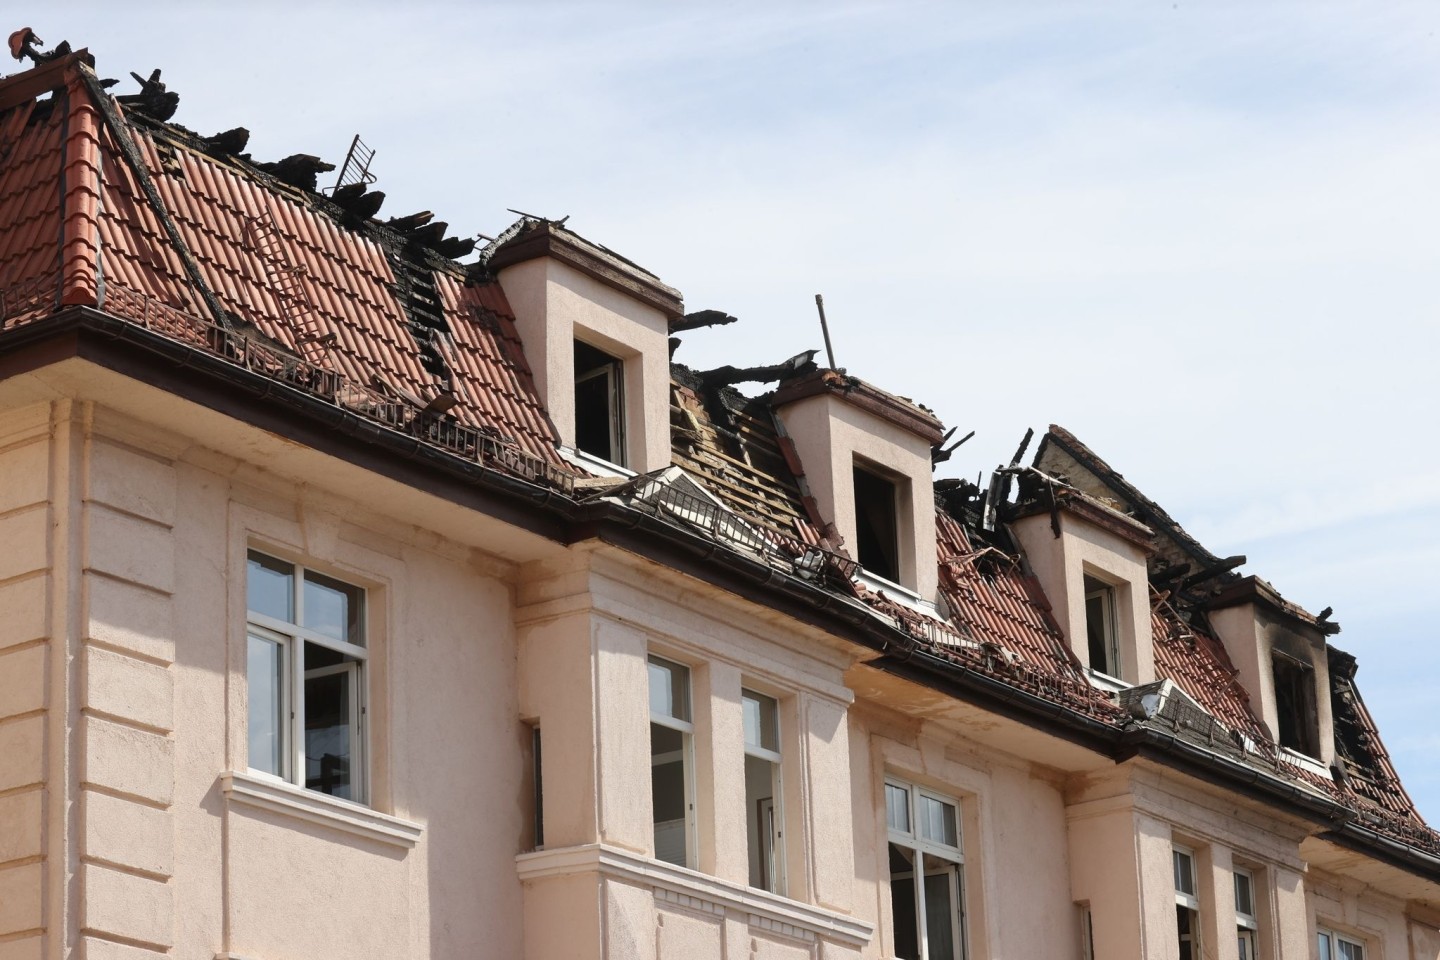 Verkohlte Fensterrahmen an einem Mehrfamilienhaus in Apolda. Bei dem Brand starben vier Menschen.